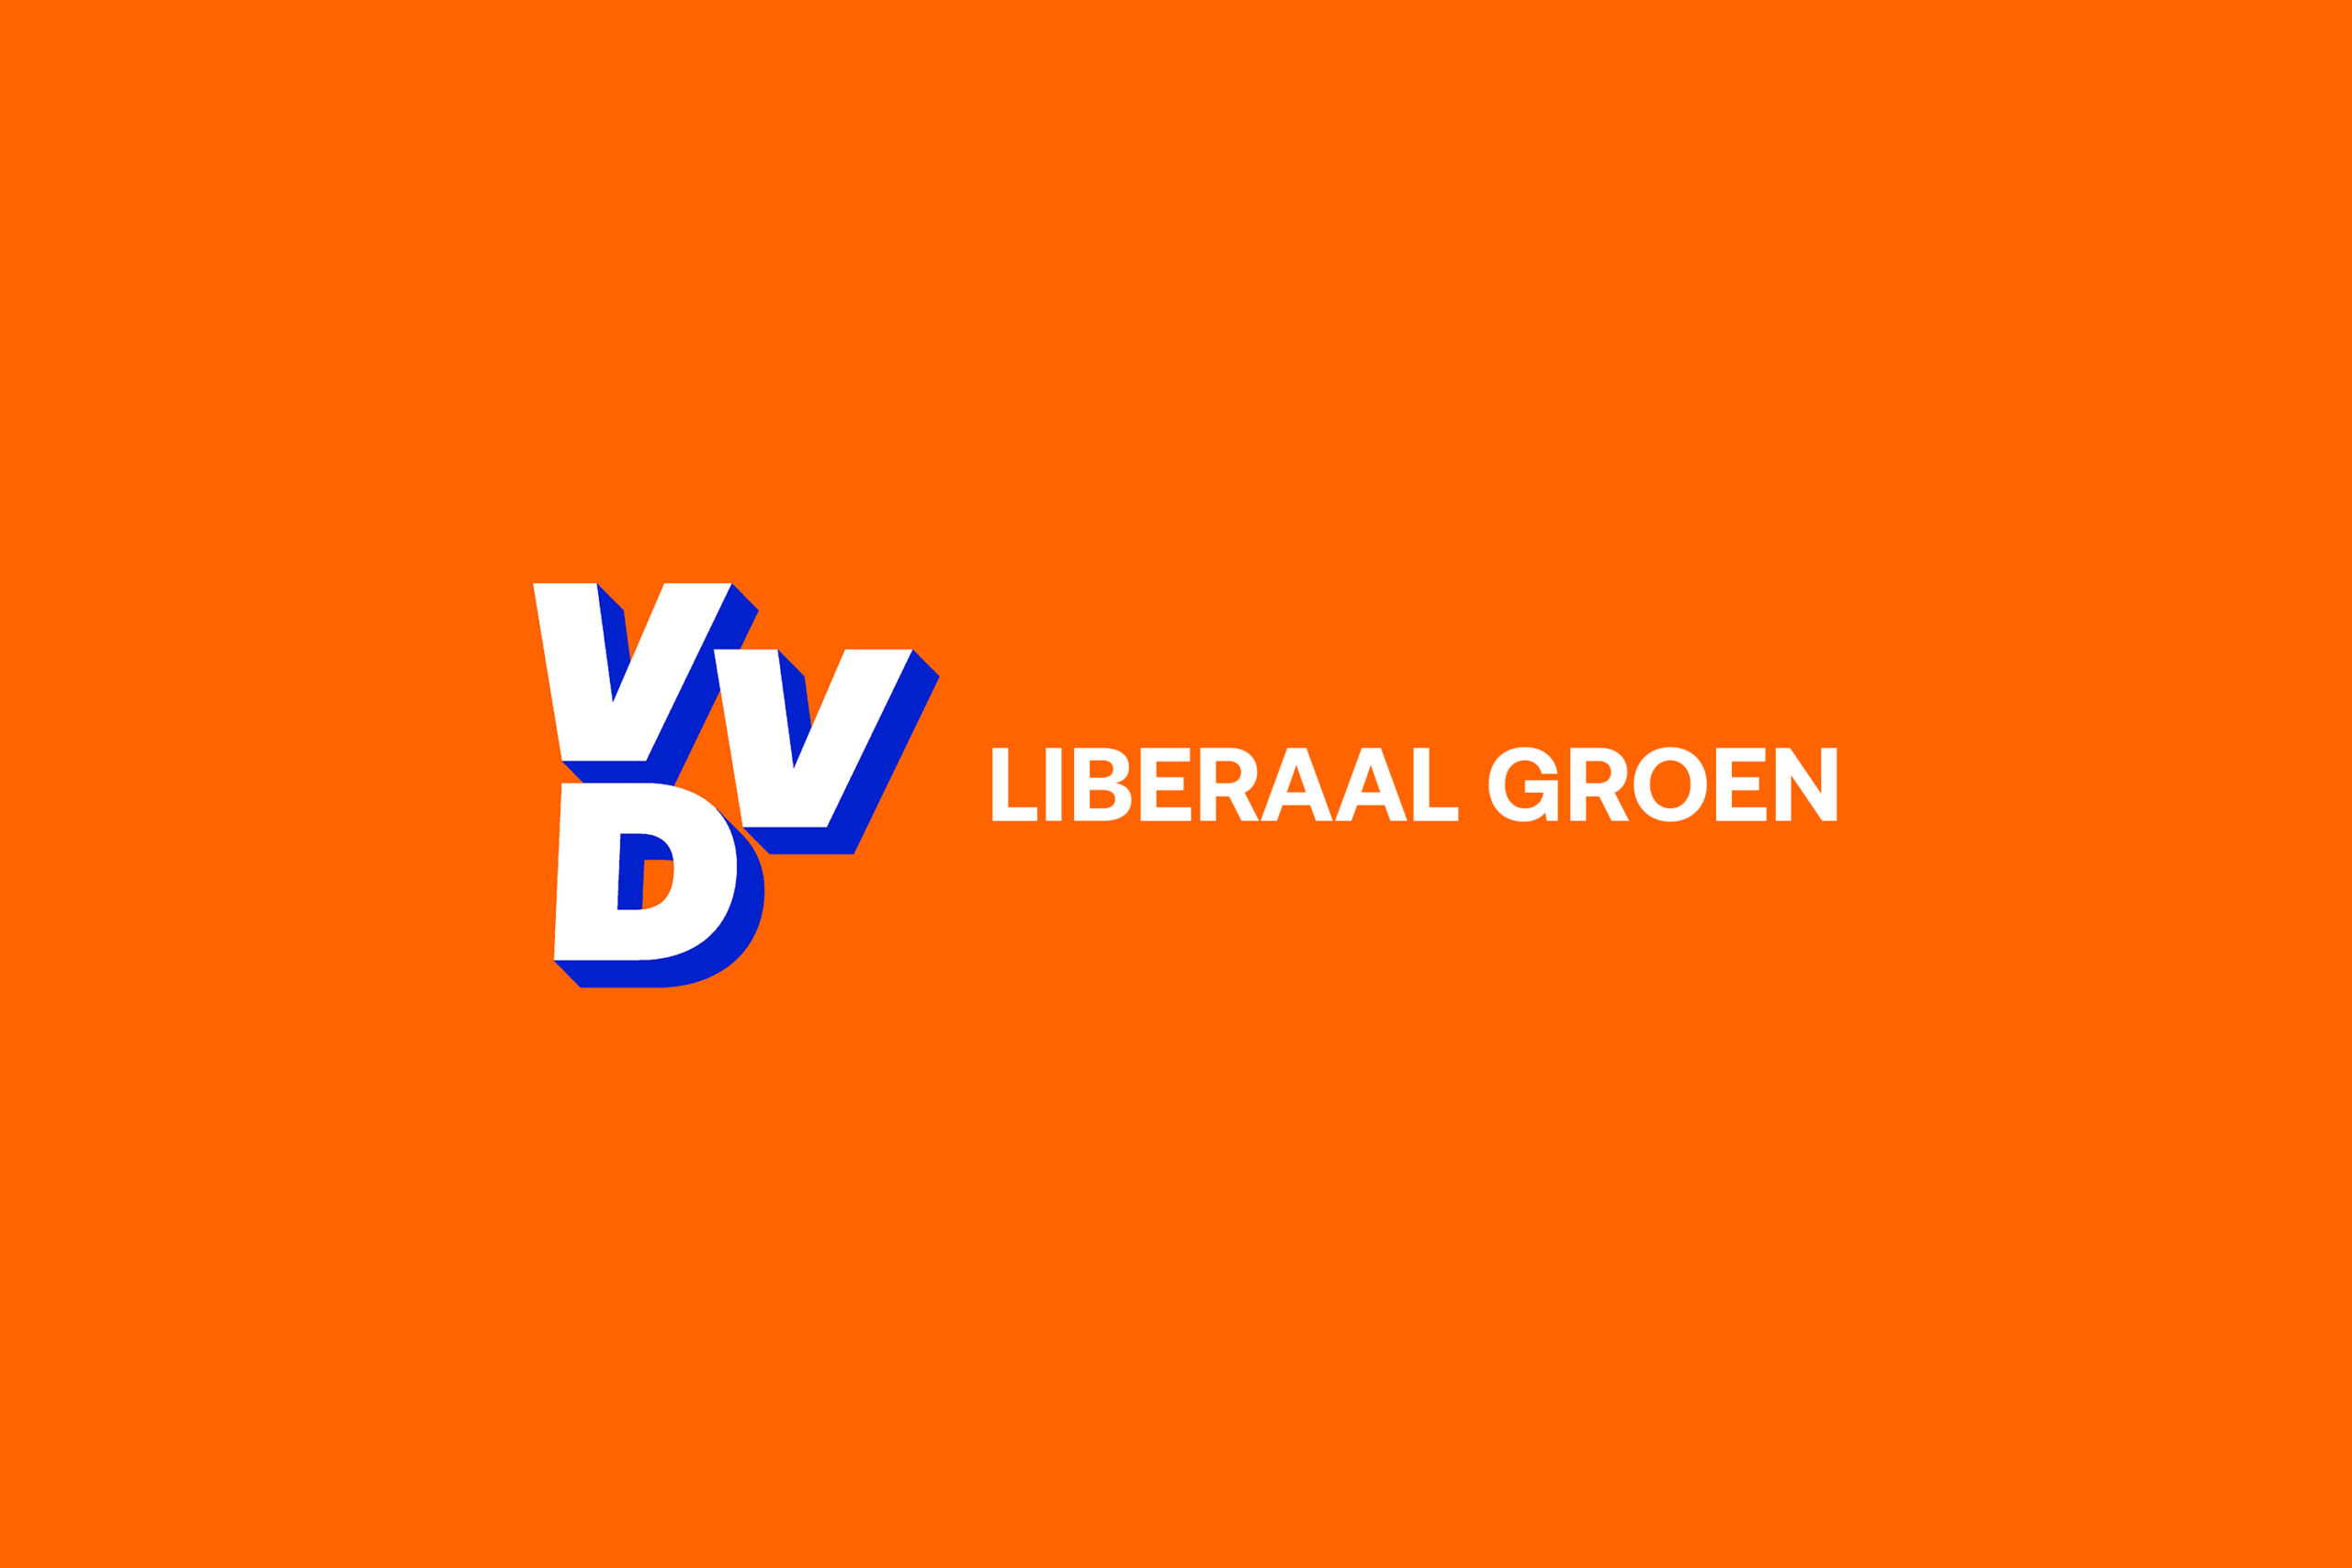 Liberaal Groen en het verkiezingsprogramma van de VVD